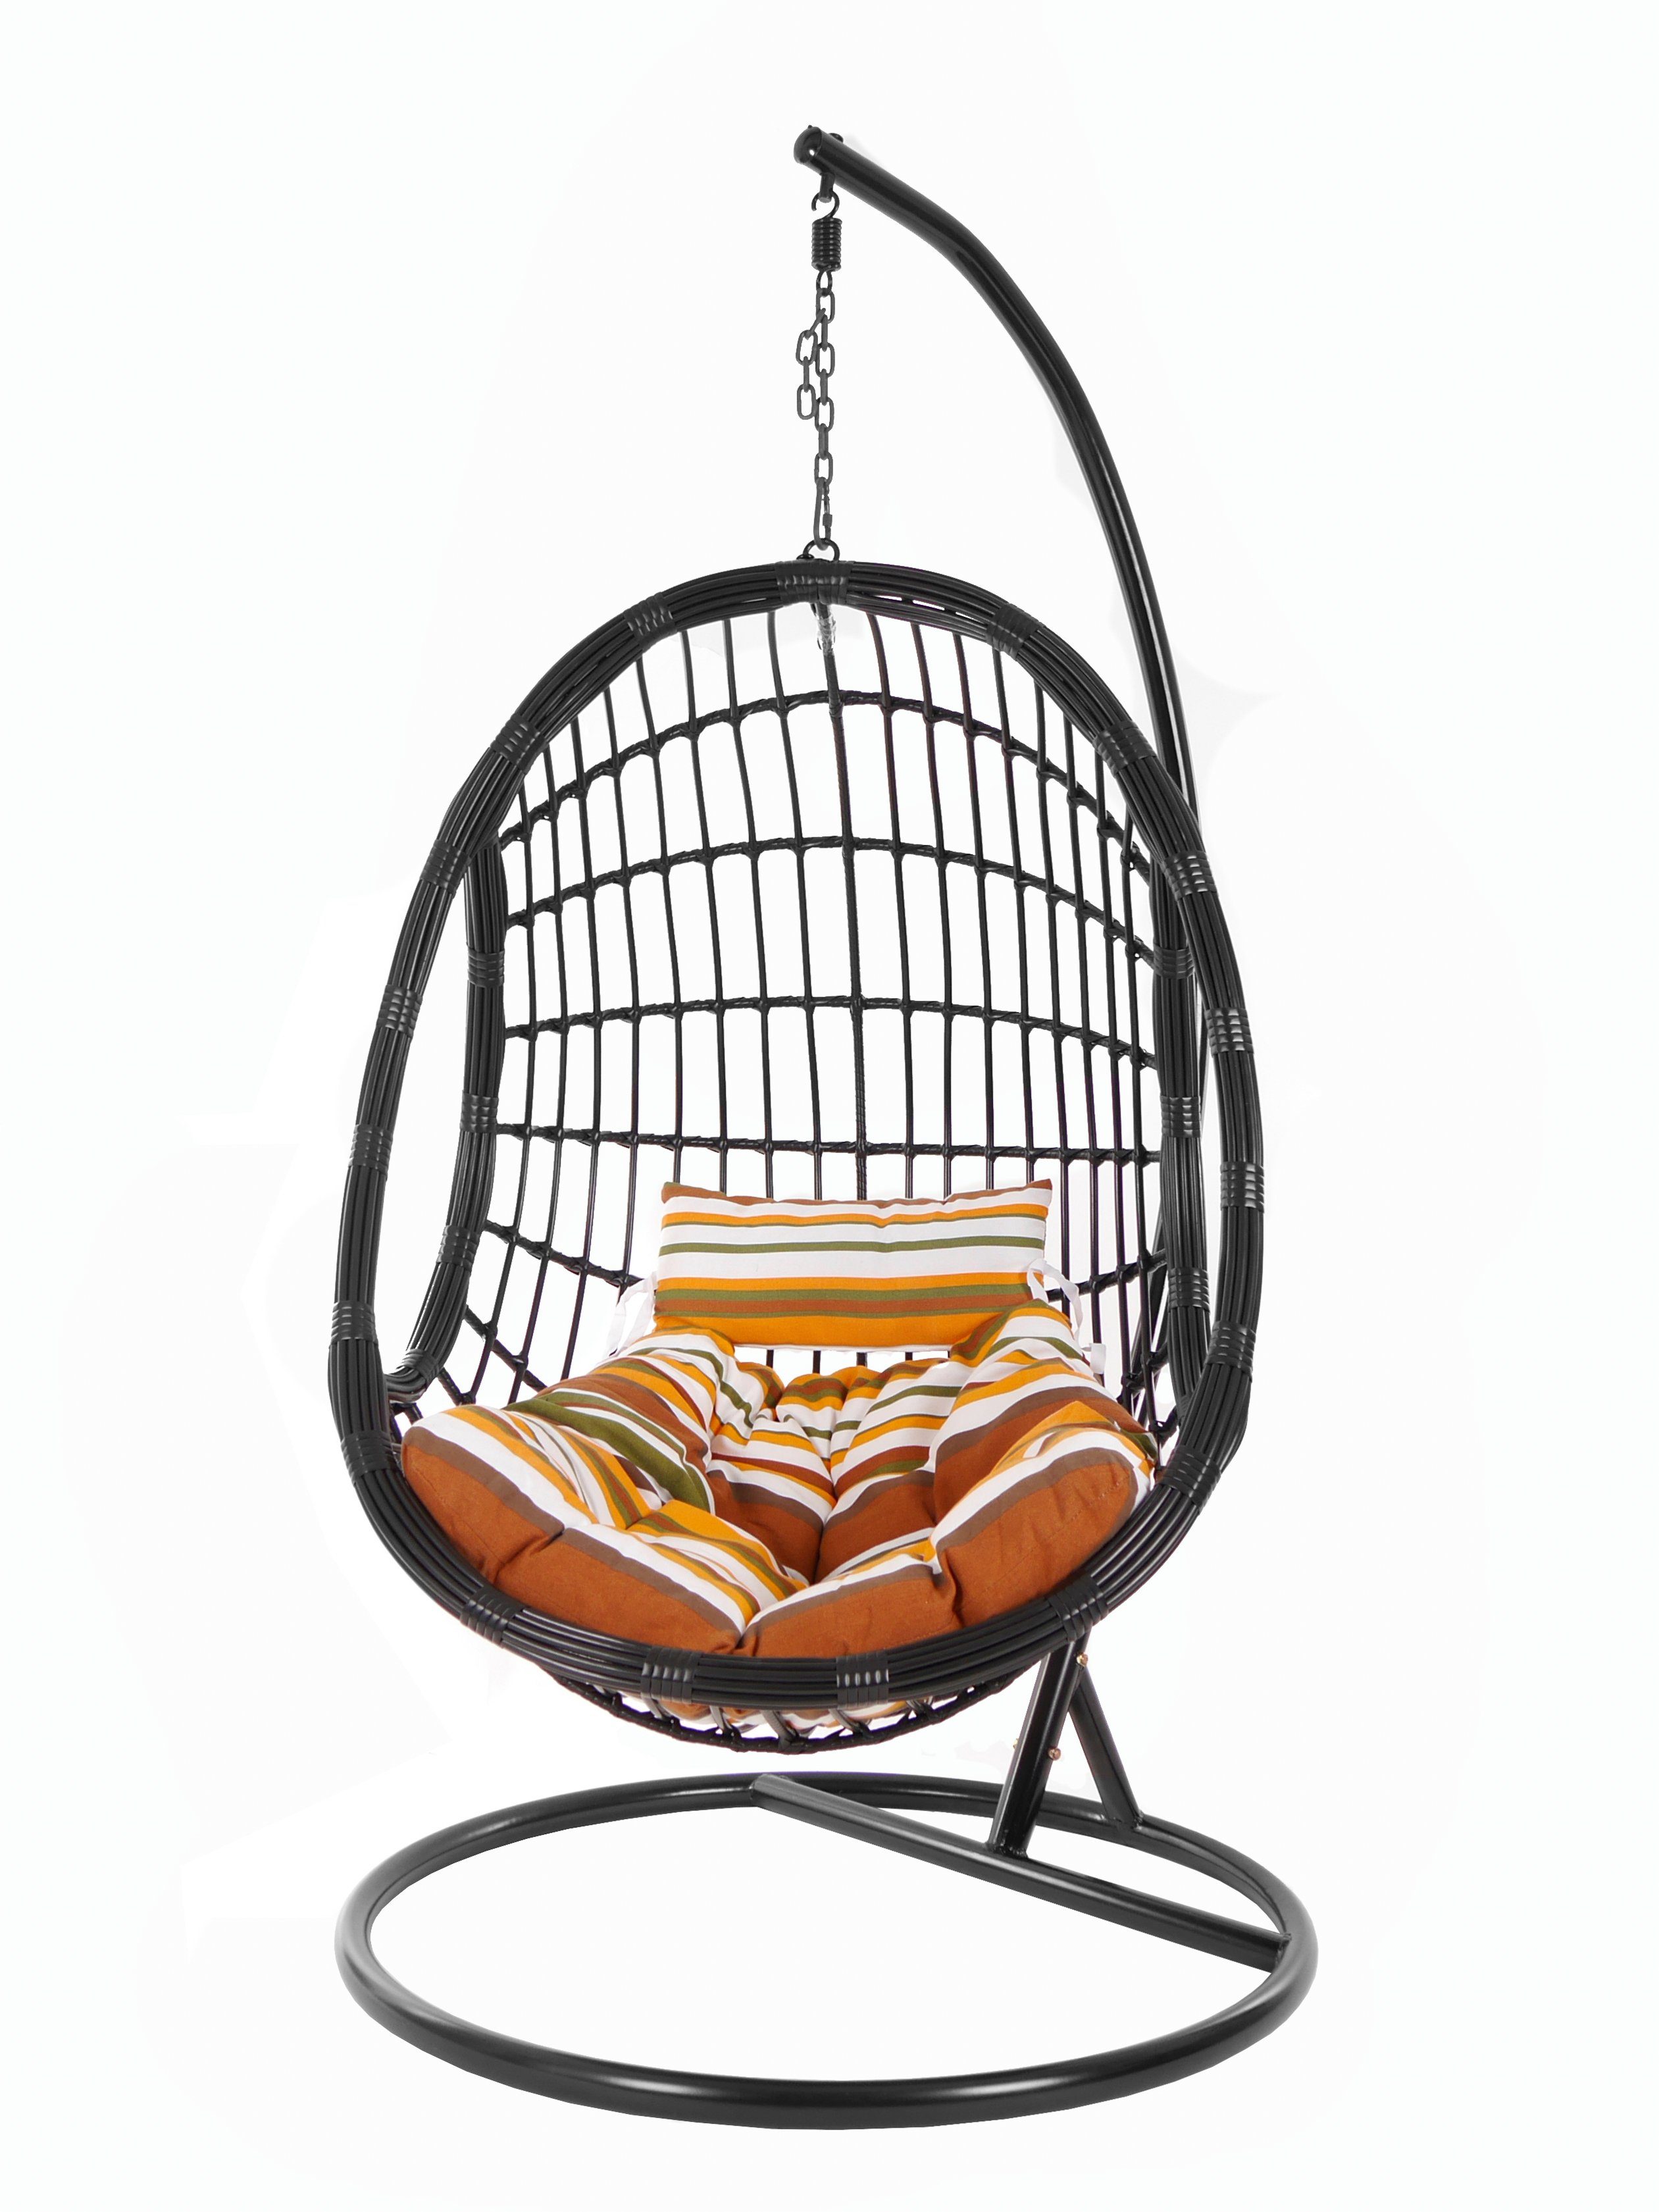 und KIDEO Chair, Design Hängesessel Swing retro mit Loungemöbel, Kissen, Hängesessel PALMANOVA (8640 stripes) Gestell black, Schwebesessel, gestreift schwarz, retro edles